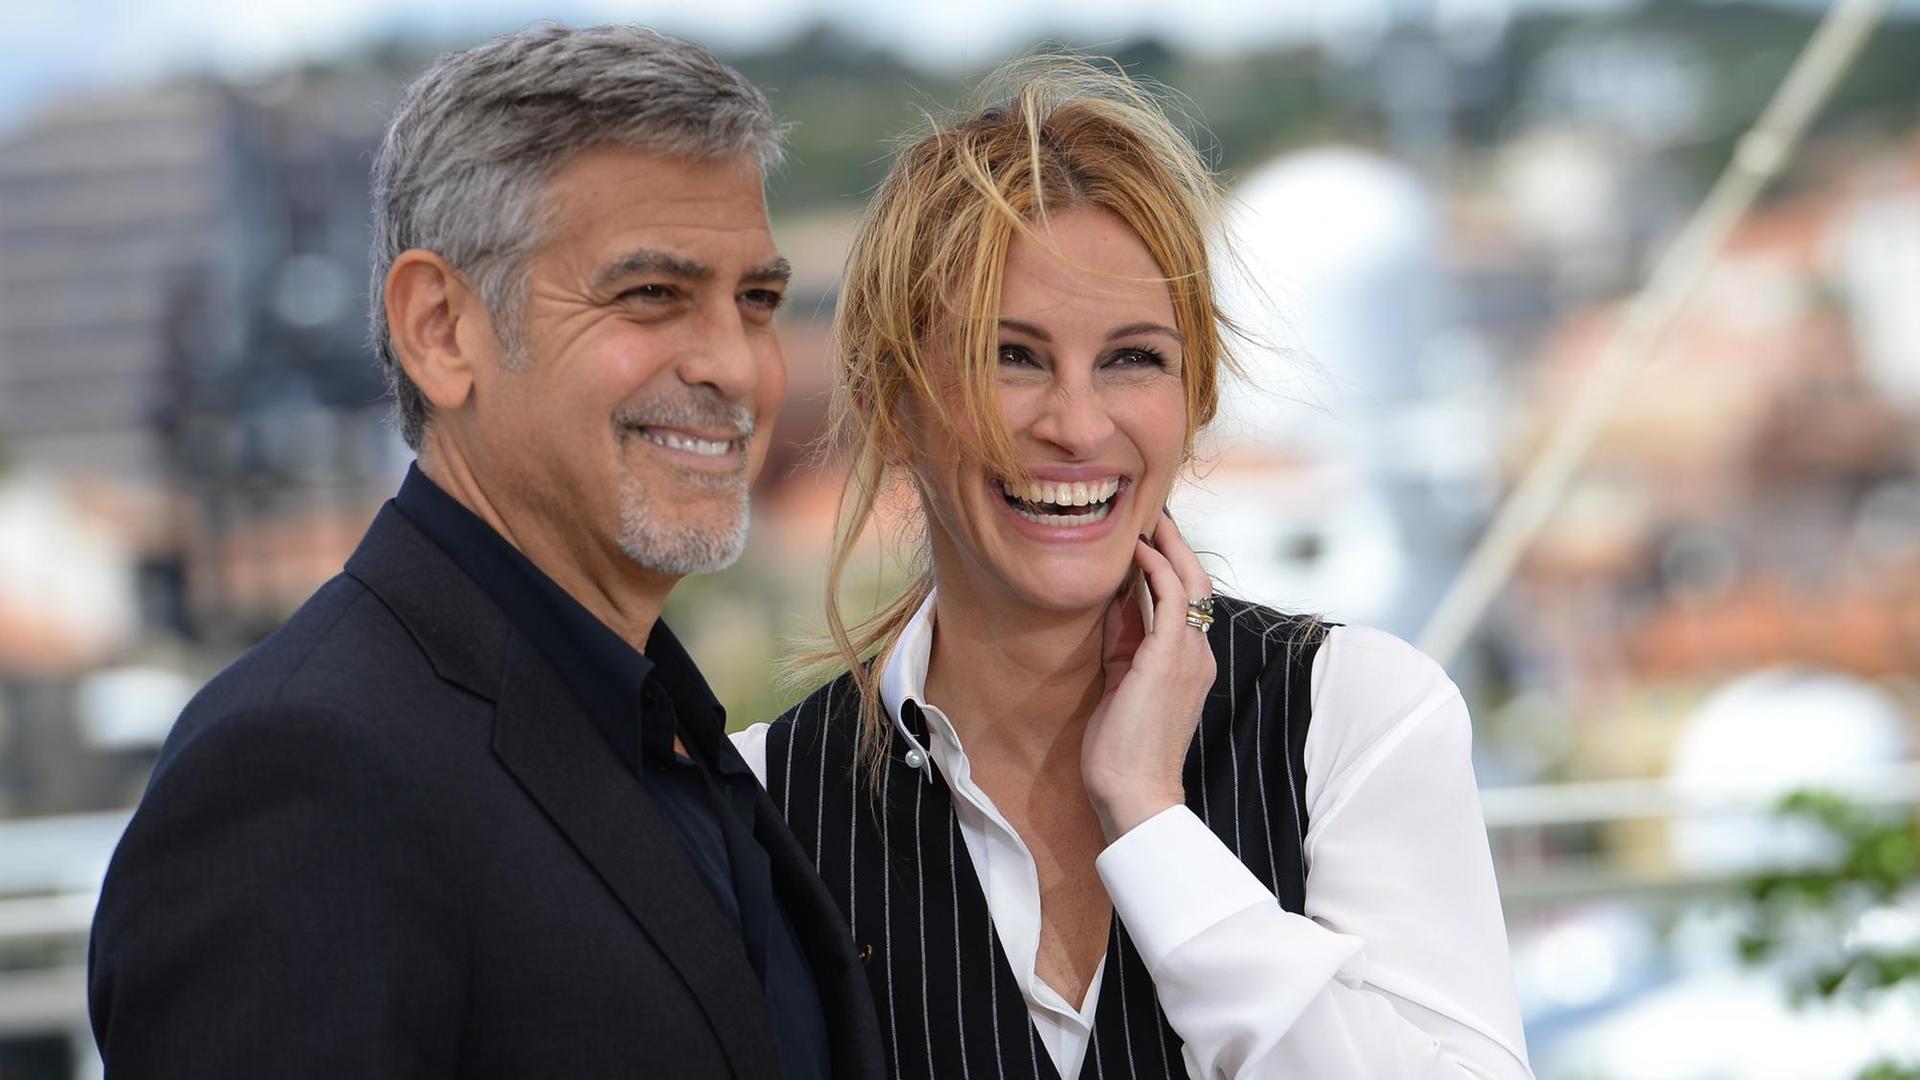 George Clooney und Julia Roberts präsentierten in Cannes den Film "Money Monster" von Jodie Foster